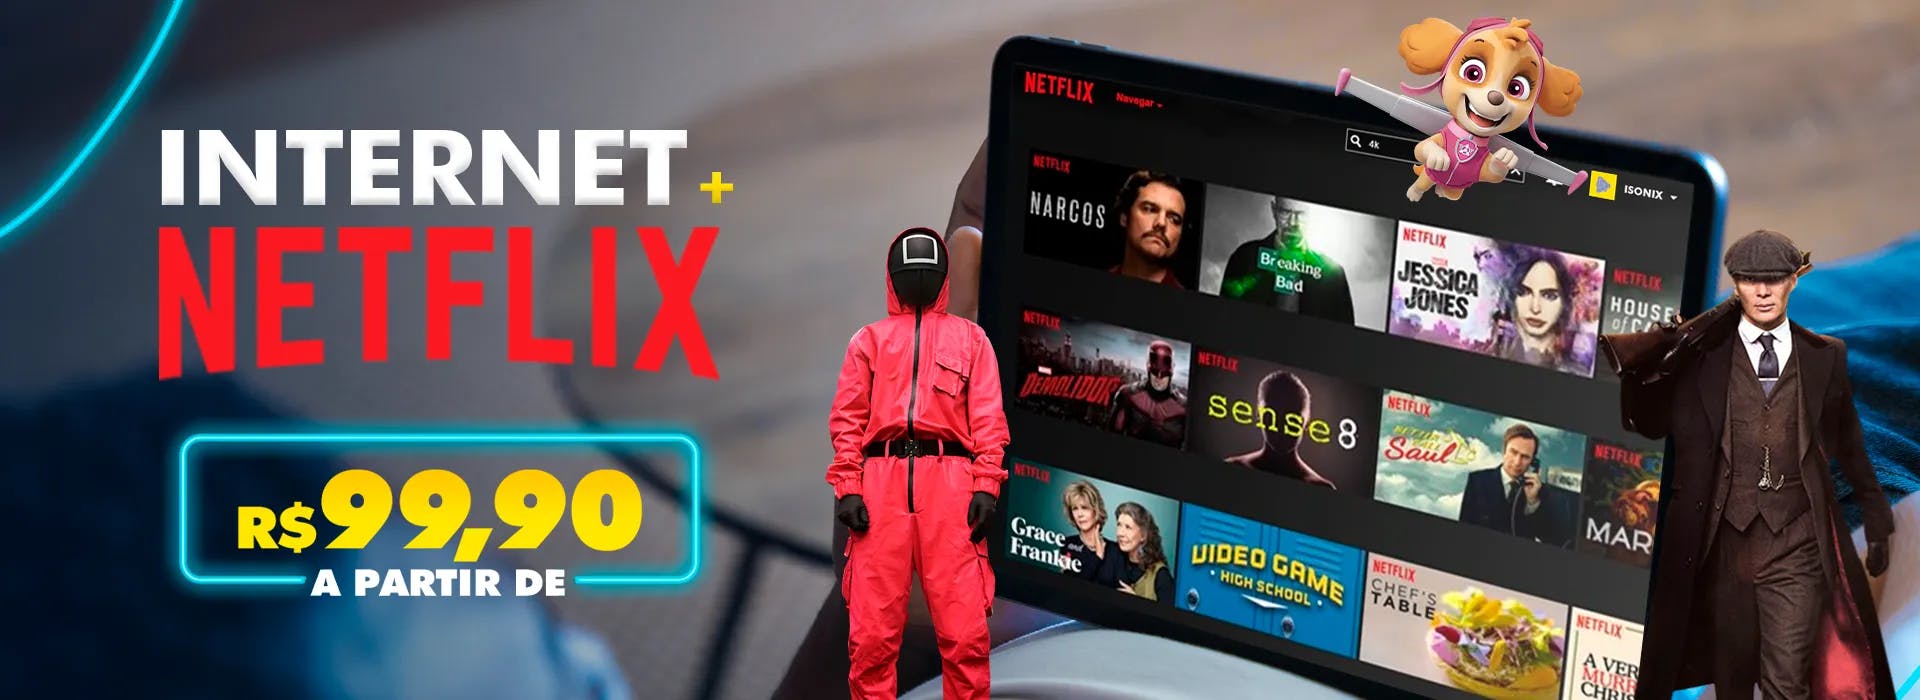 Plano de Internet com Netflix